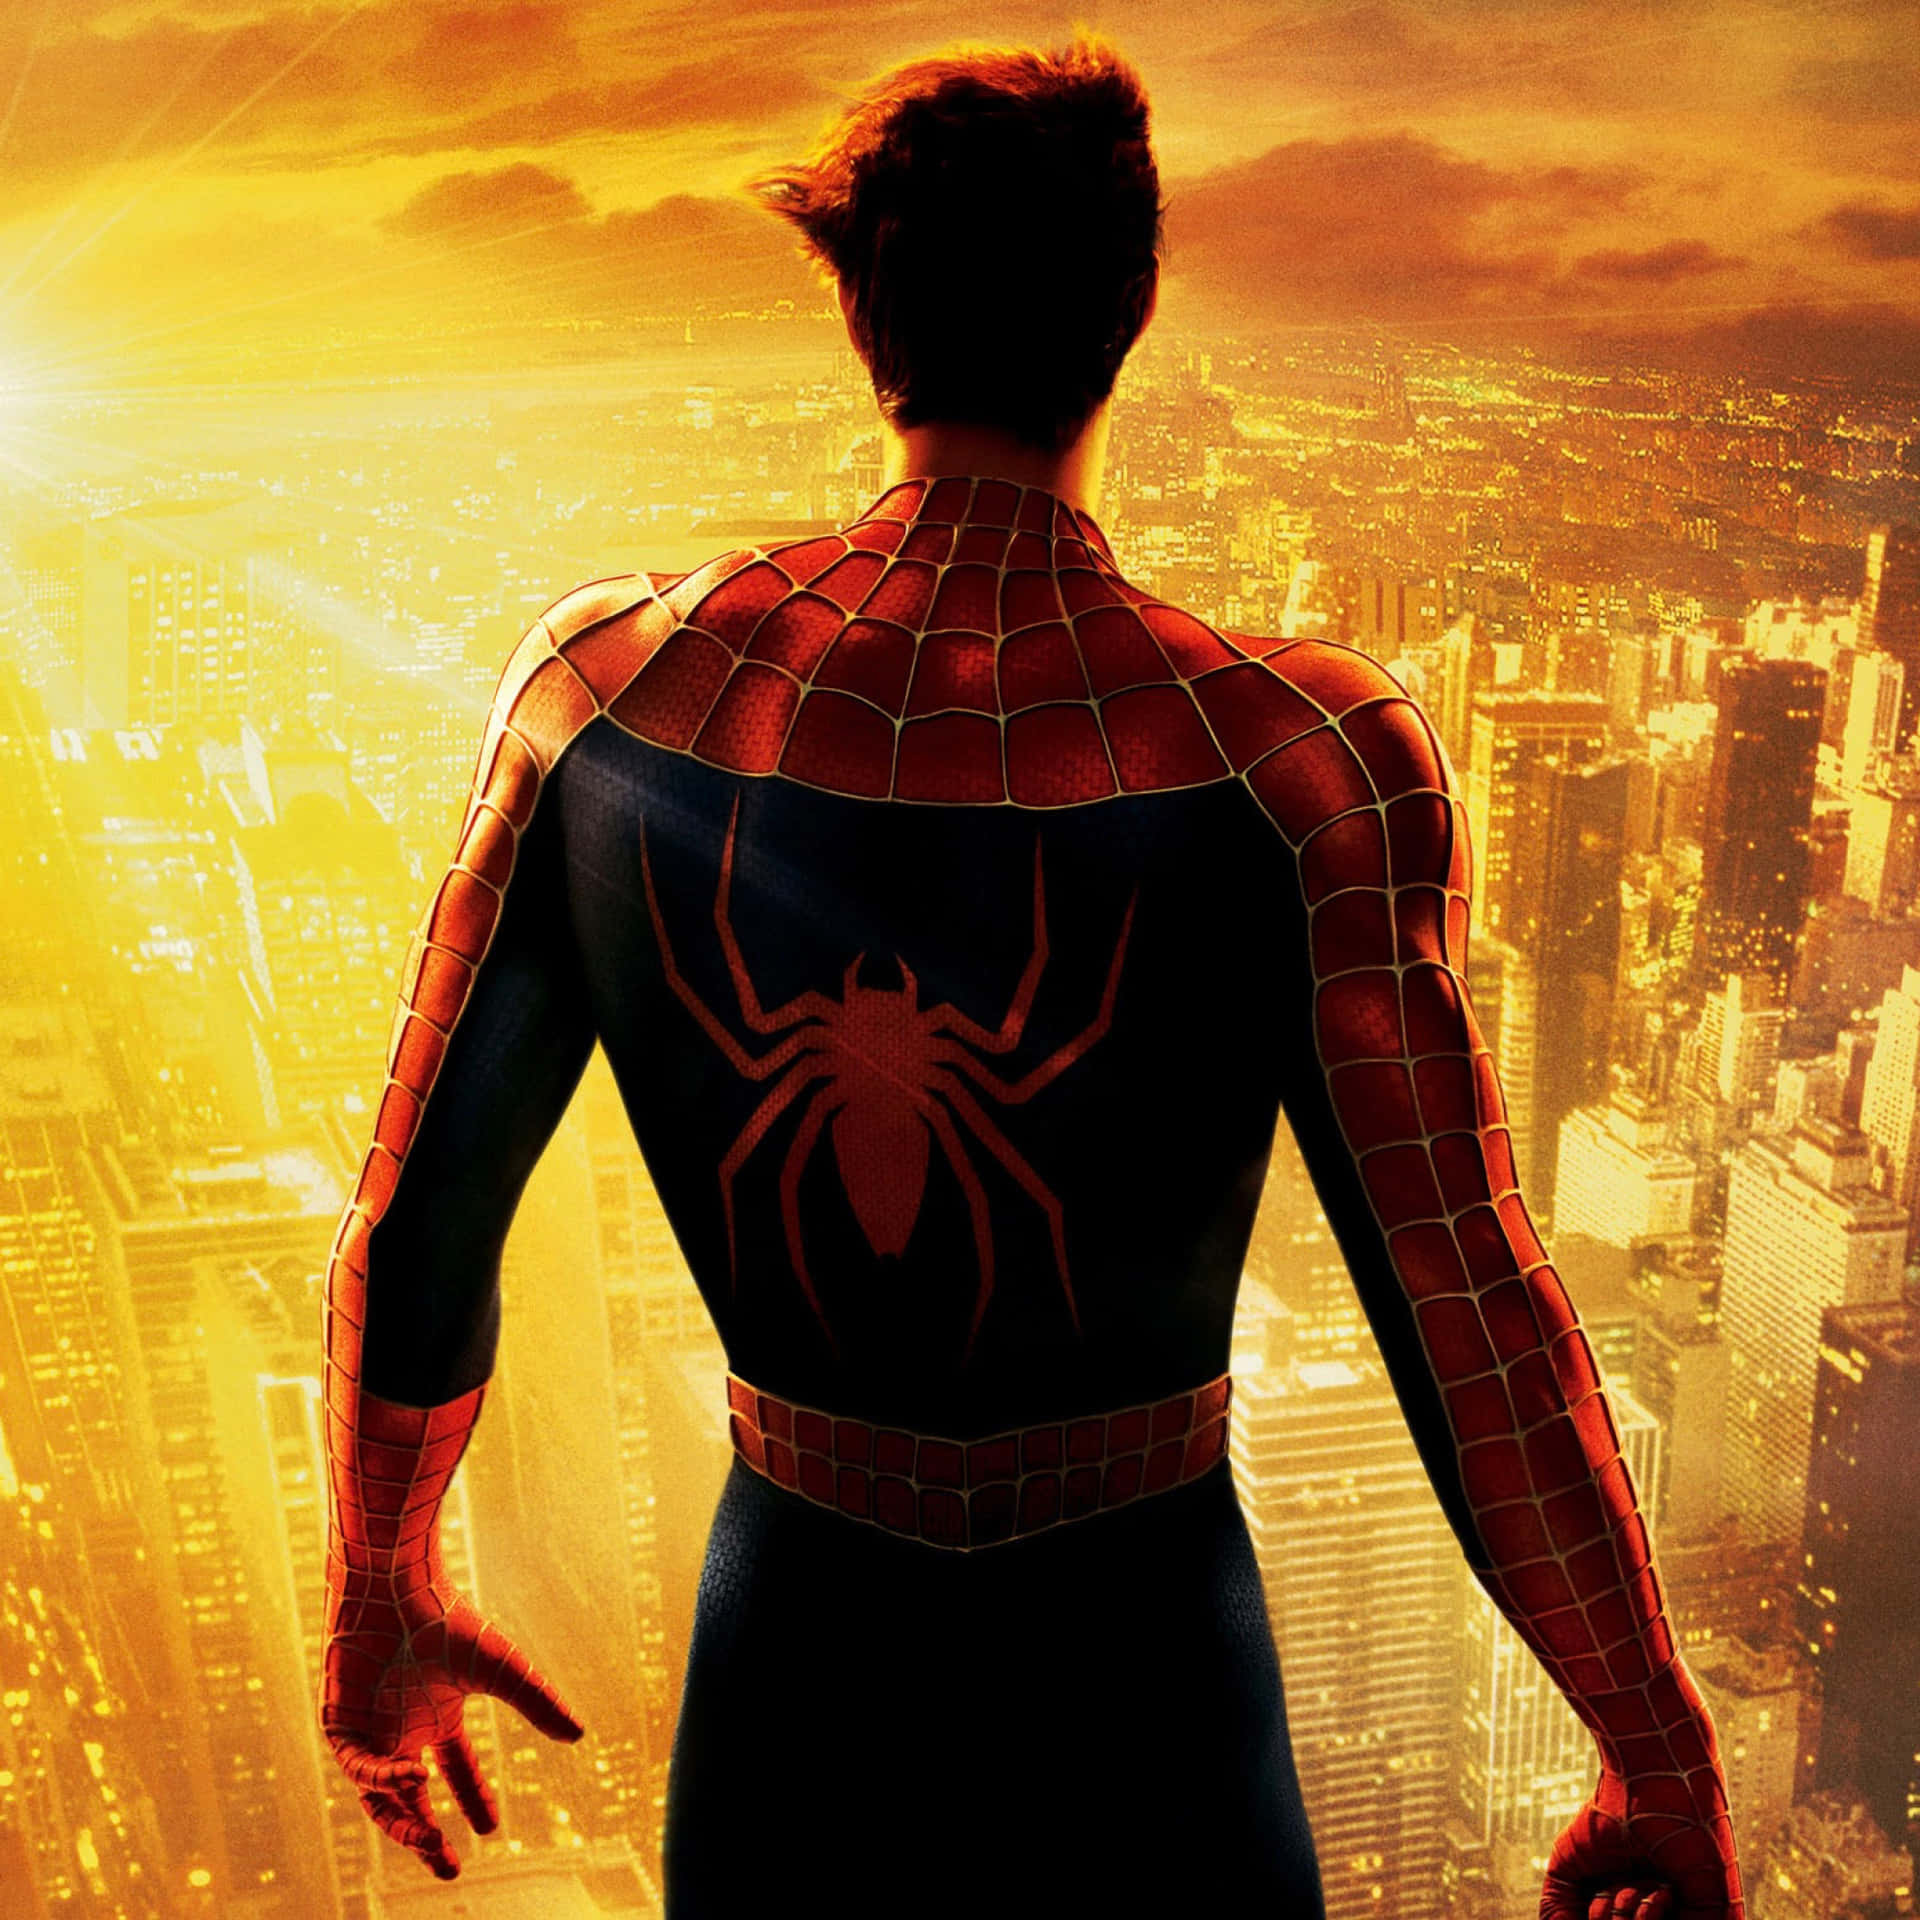 Begleitedie Reise Von Peter Parker Und Erlebe Das Actionreiche Und Fesselnde Spider-man-trilogie. Wallpaper